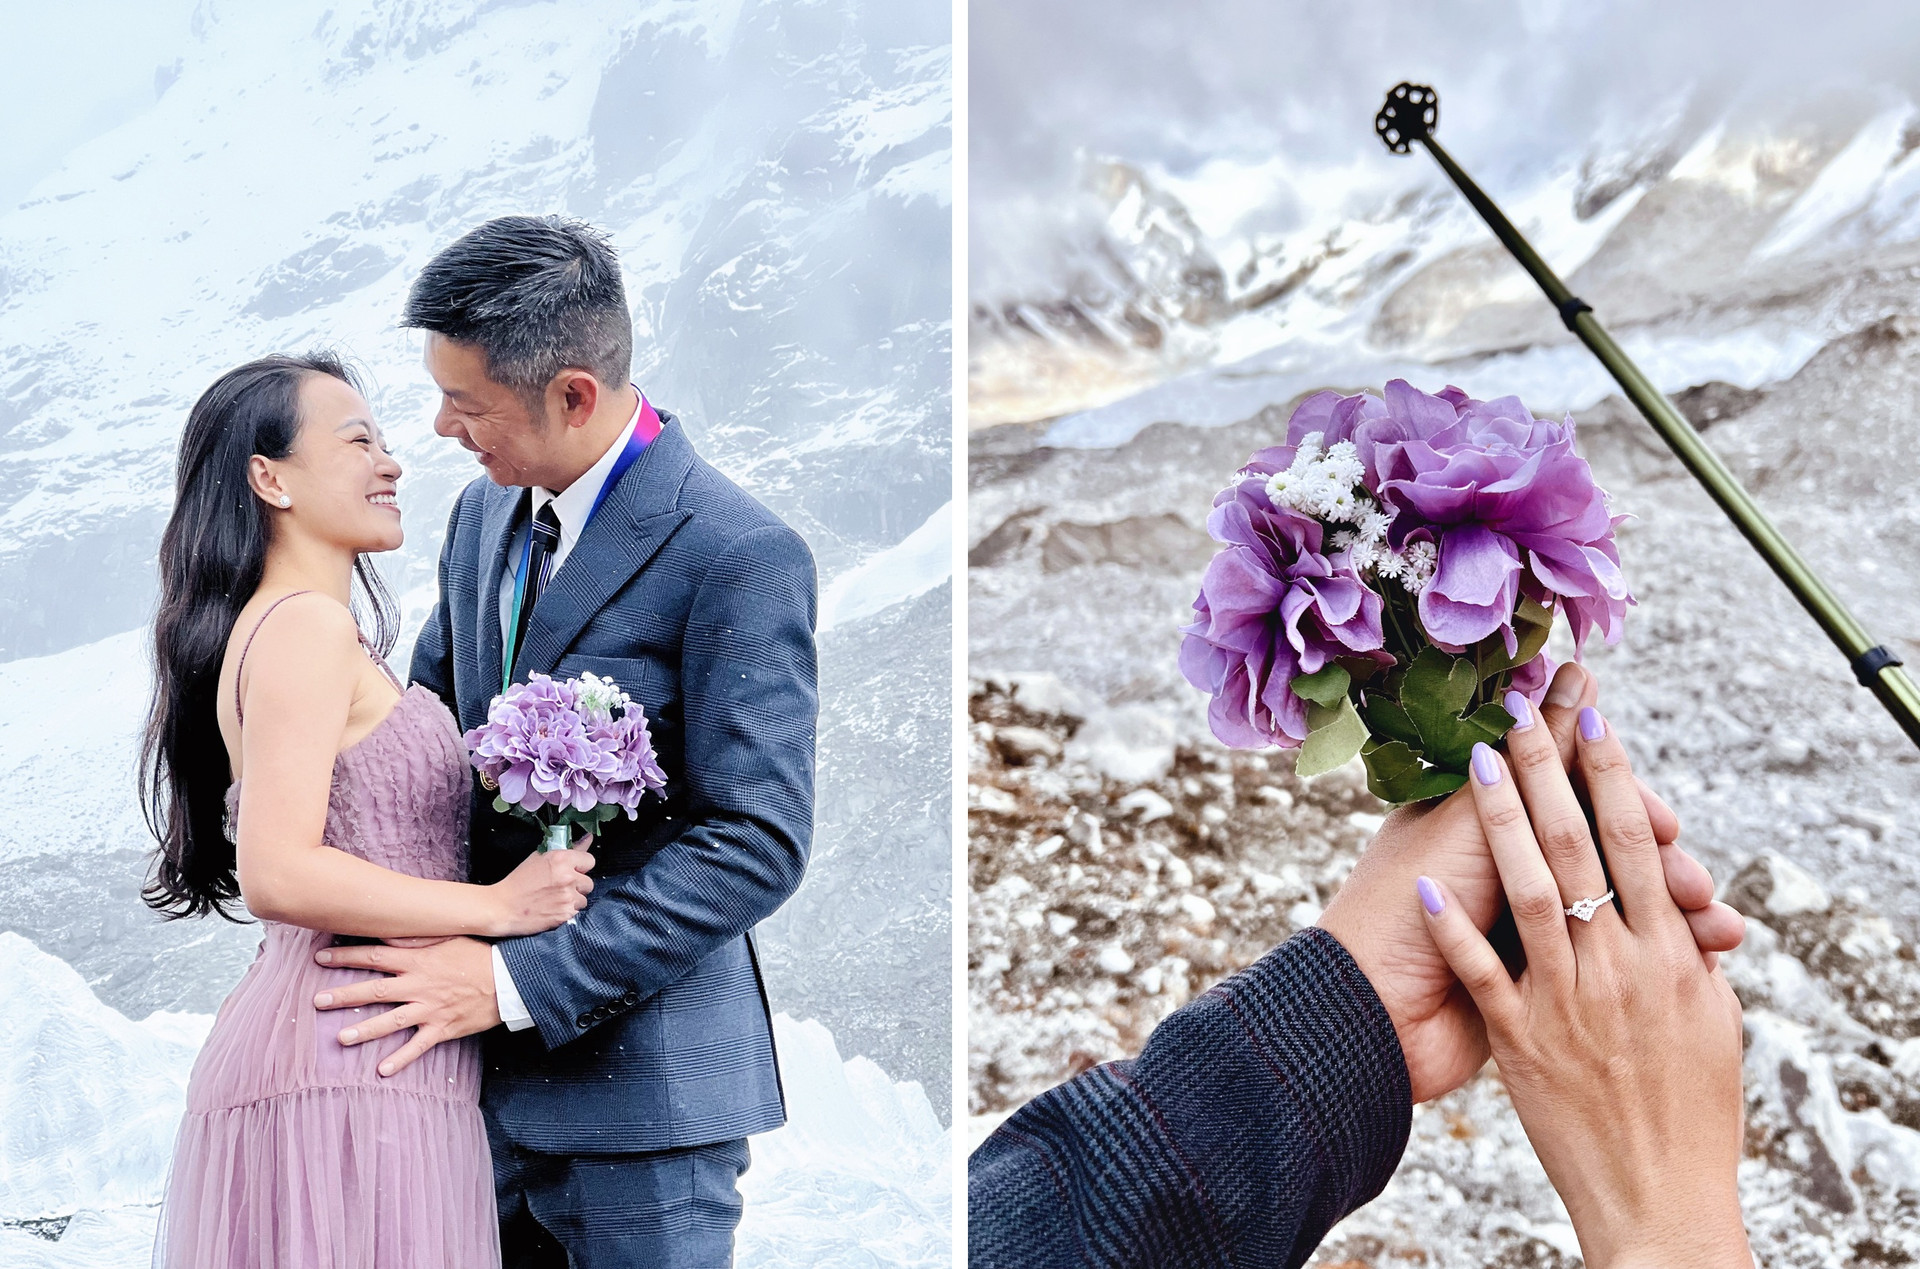 Chuyện tình lãng mạn của cặp đôi Việt cầu hôn trên Everest - 3